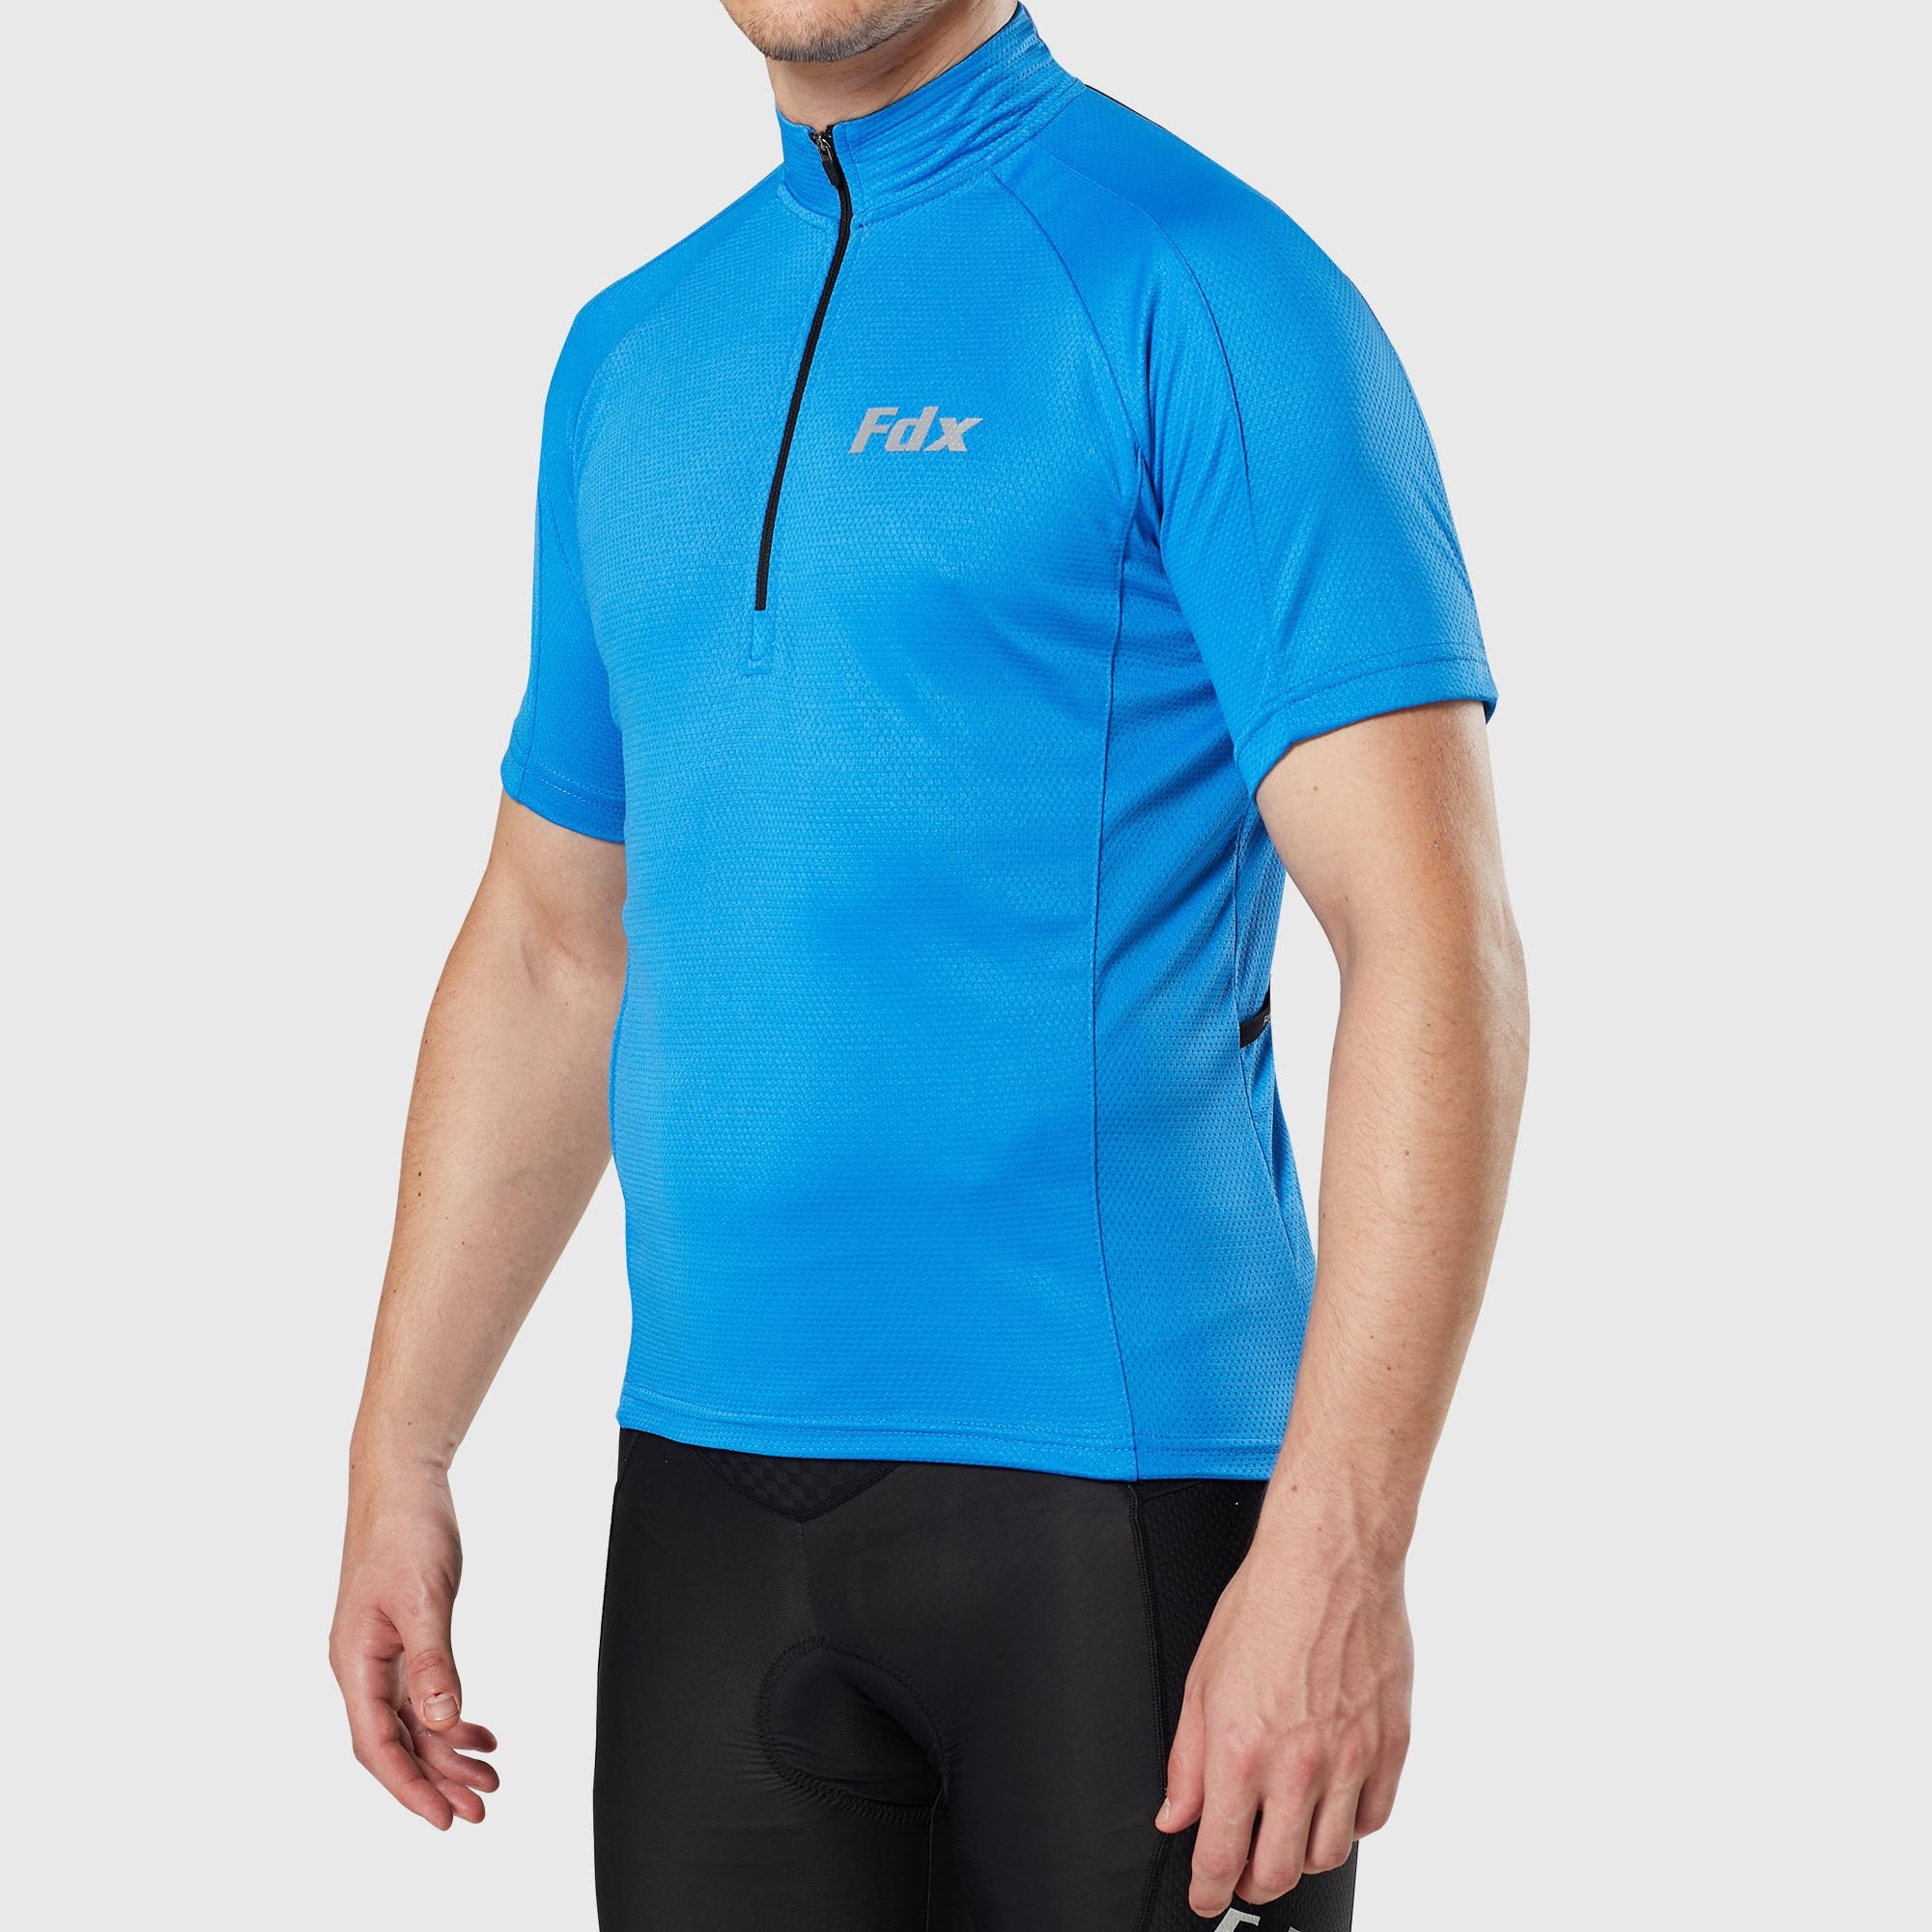 Fdx Pace Blue Men's Short Sleeve Summer Cycling Jersey, XL / Blue